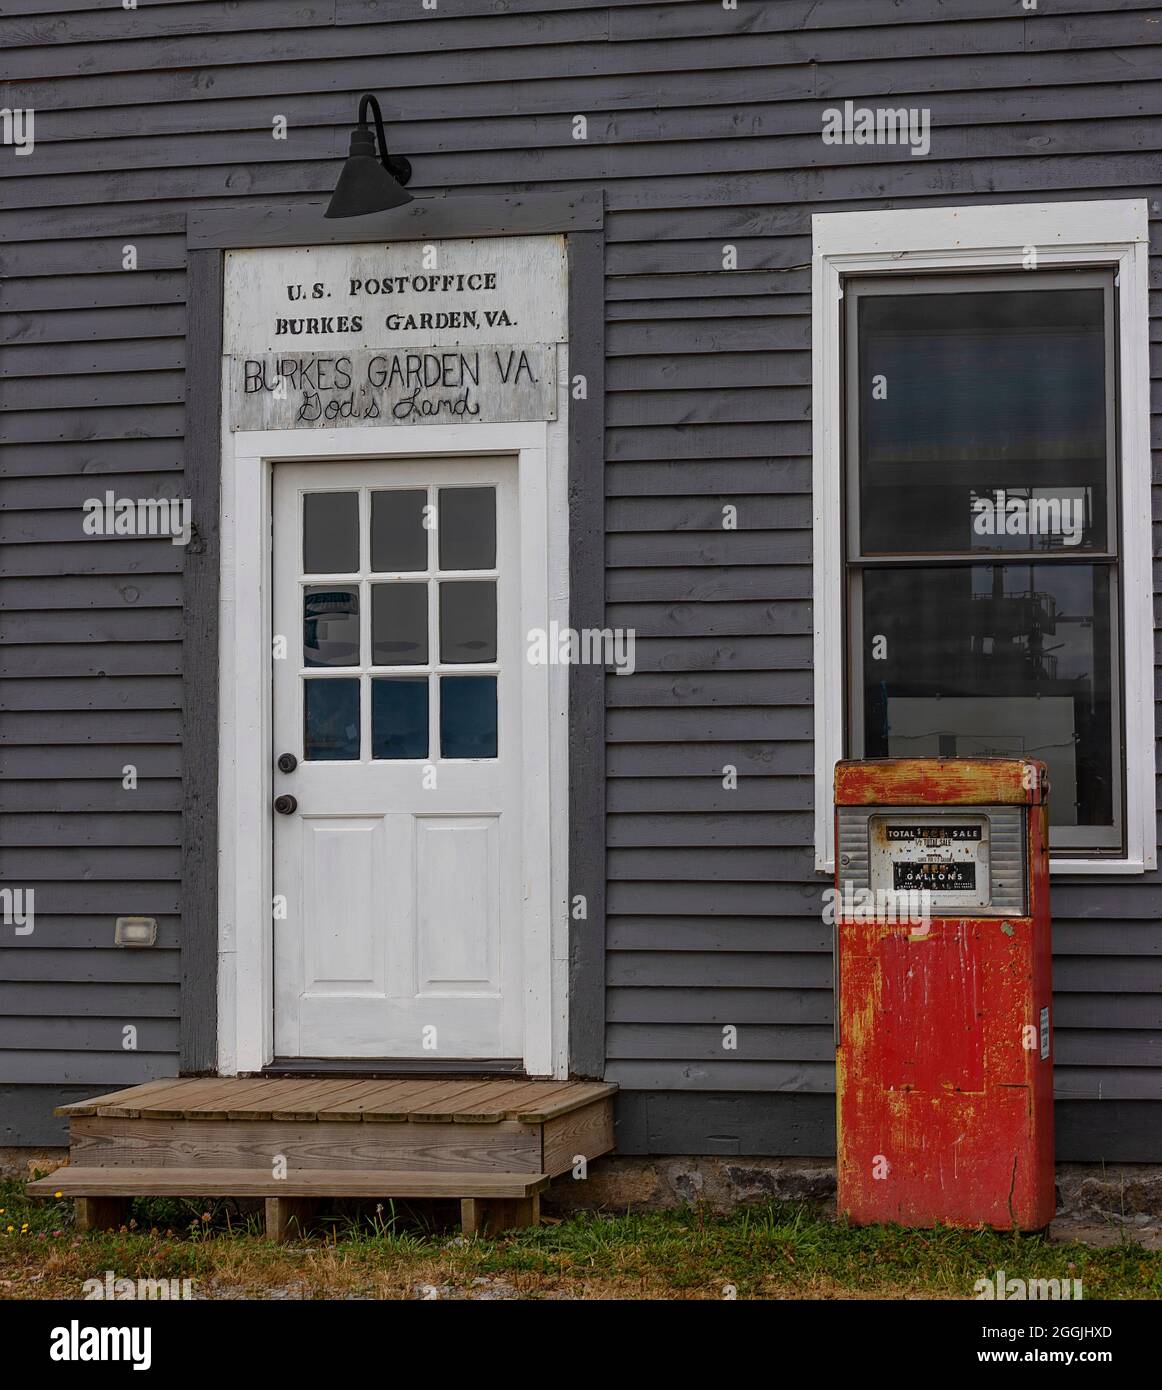 Burke's Garden, Virginie, États-Unis - 7 août 2021: Bureau de poste dans cette communauté rurale avec l'ancienne pompe à gaz devant. Banque D'Images